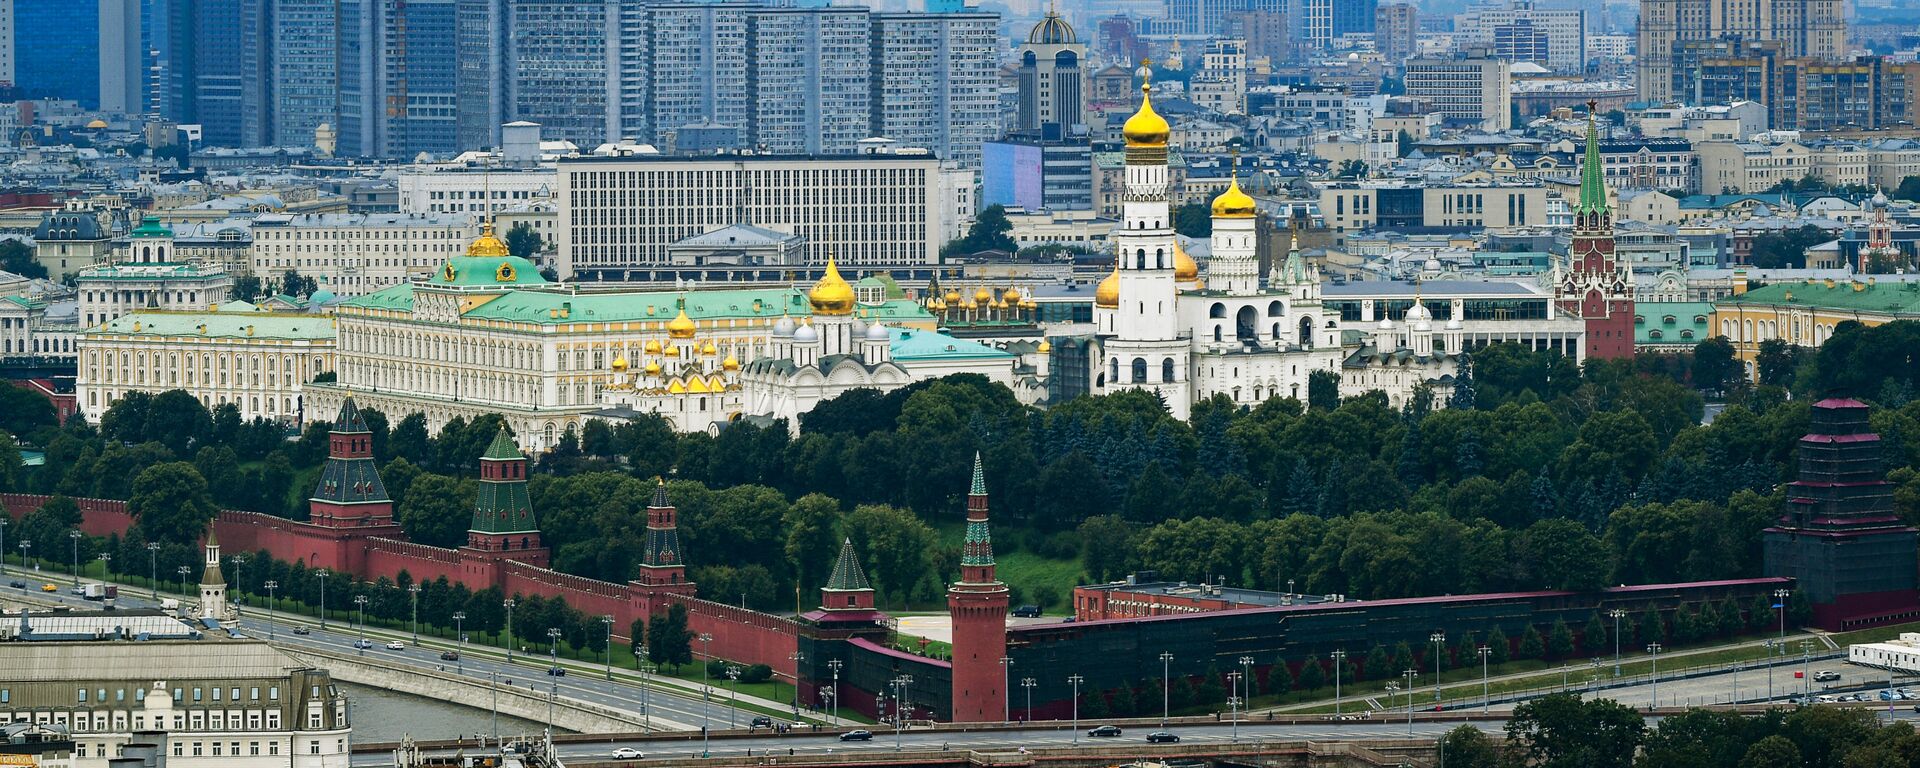 Tradición y modernidad: así es Moscú a vista de pájaro - Sputnik Mundo, 1920, 25.07.2018